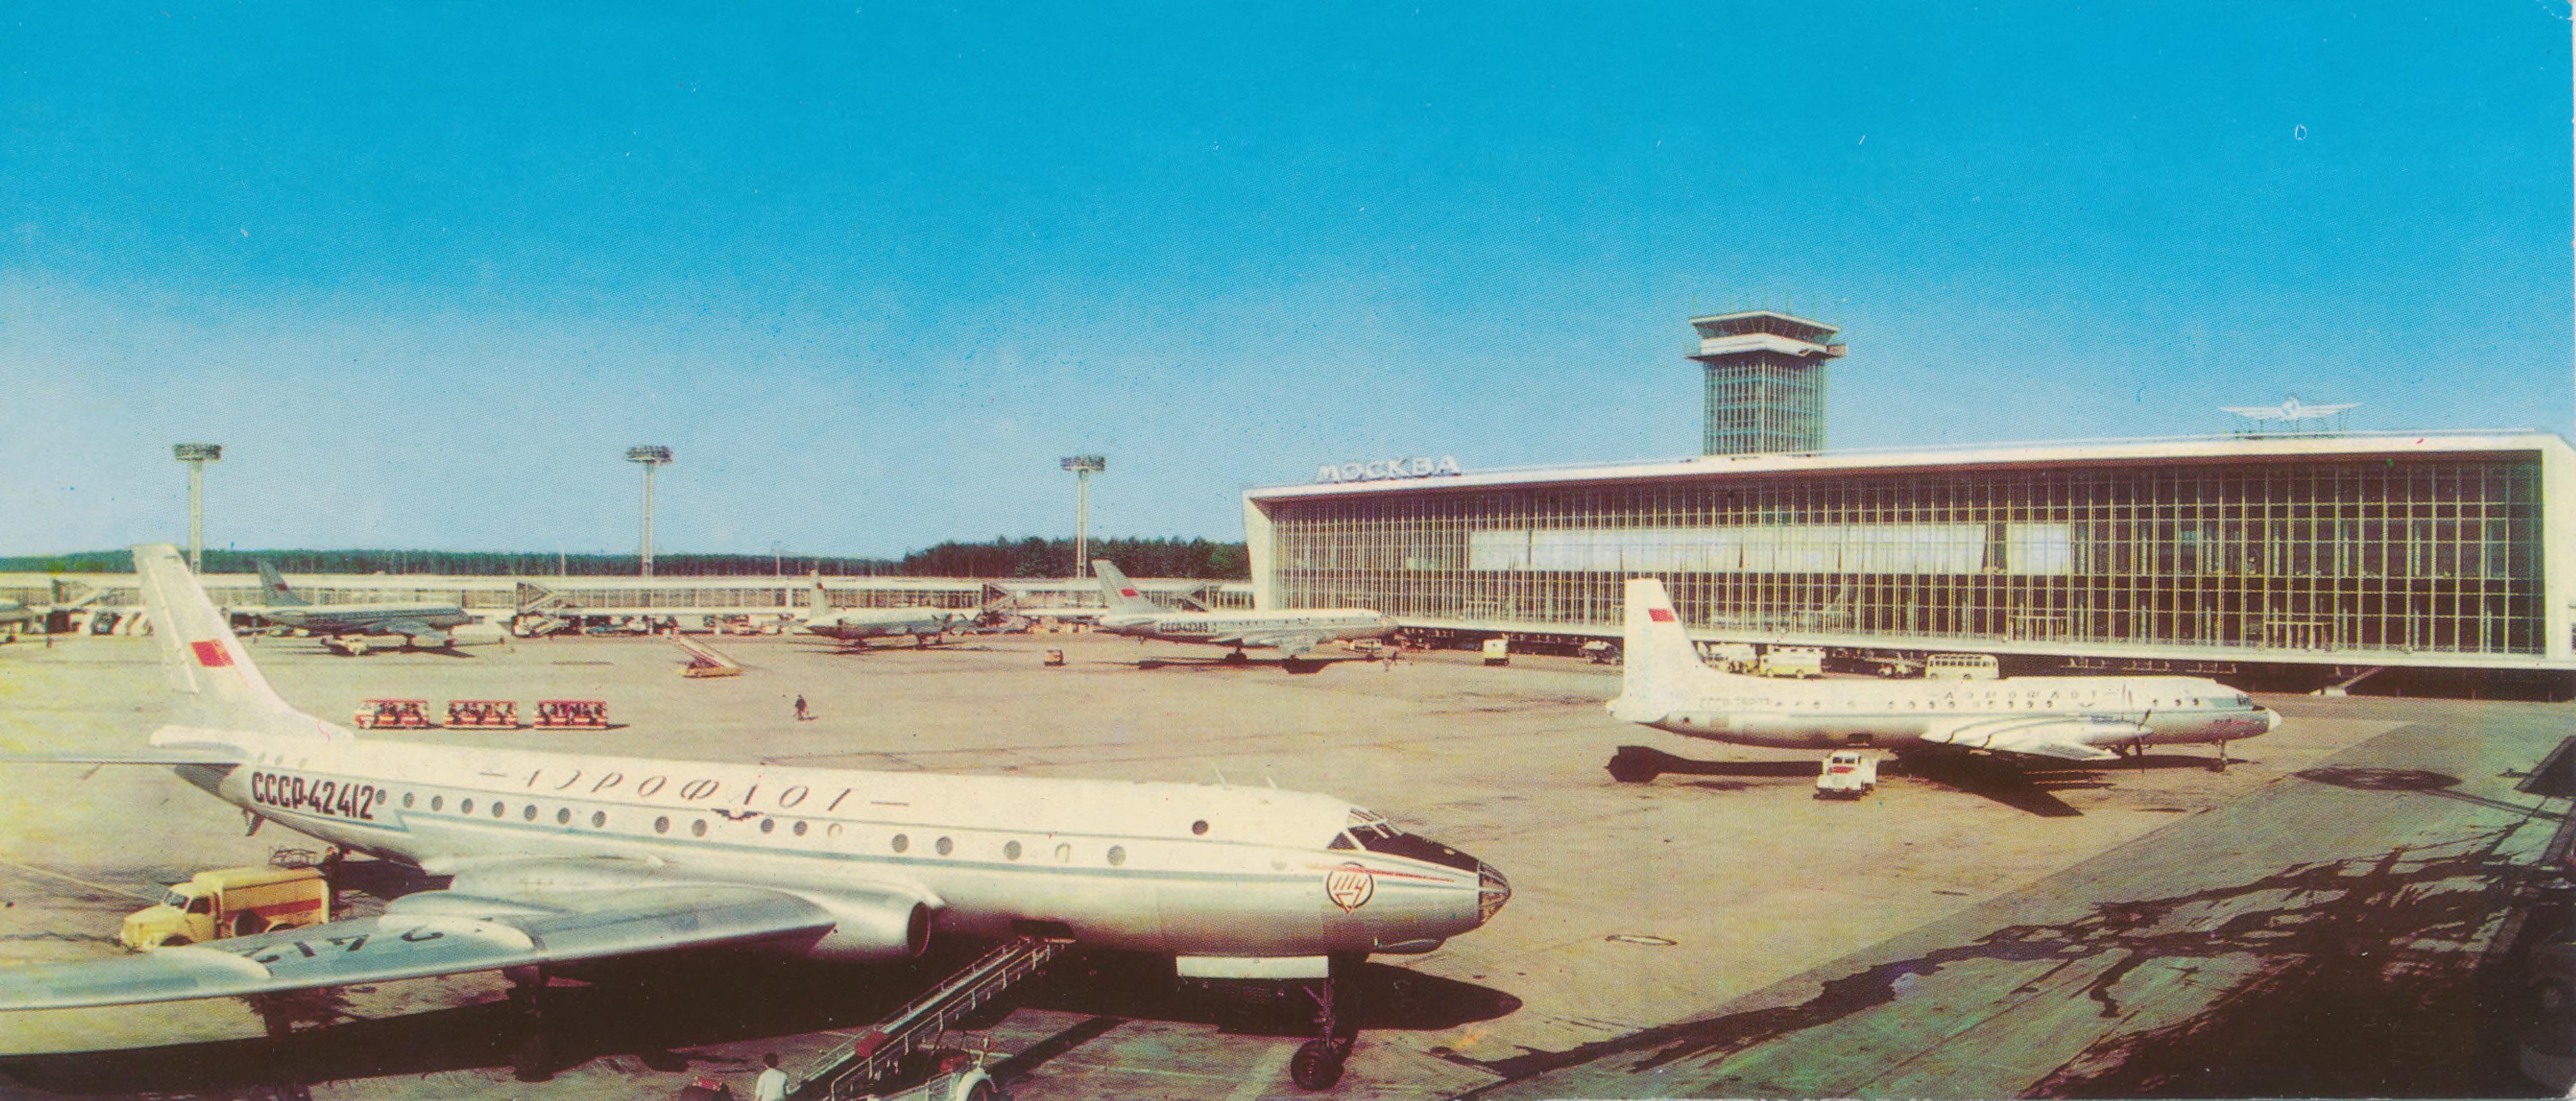 аэропорт внуково старое здание